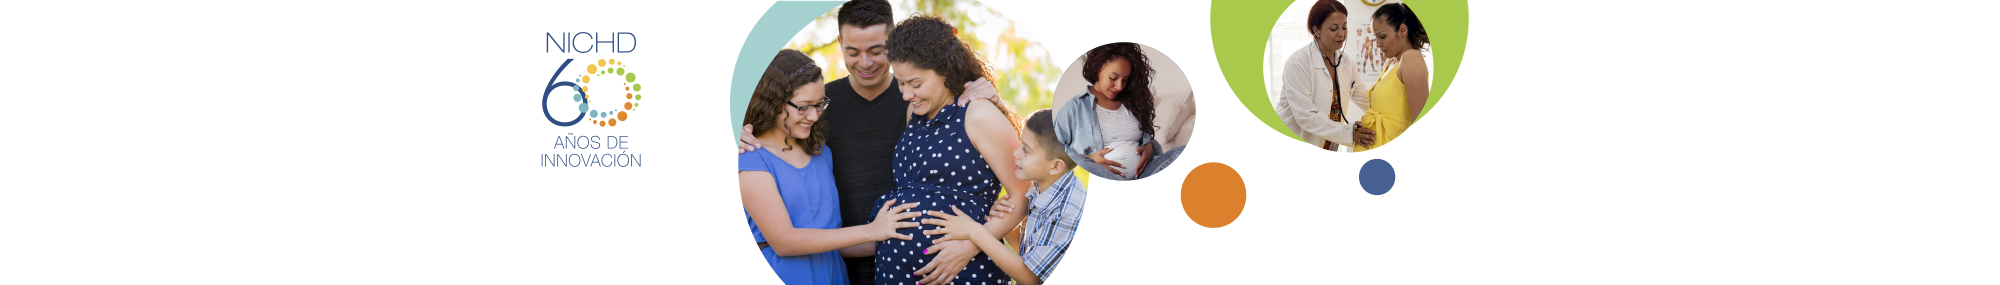 Un gráfico del logotipo de los 60 años de innovación del NICHD, seguido de una serie de tres imágenes relacionadas con la salud materna, que incluyen: una persona embarazada rodeada de su pareja y sus hijos (izquierda), una persona embarazada sentada en una cama (centro) y un médico examinando el vientre de una persona embarazada (derecha).